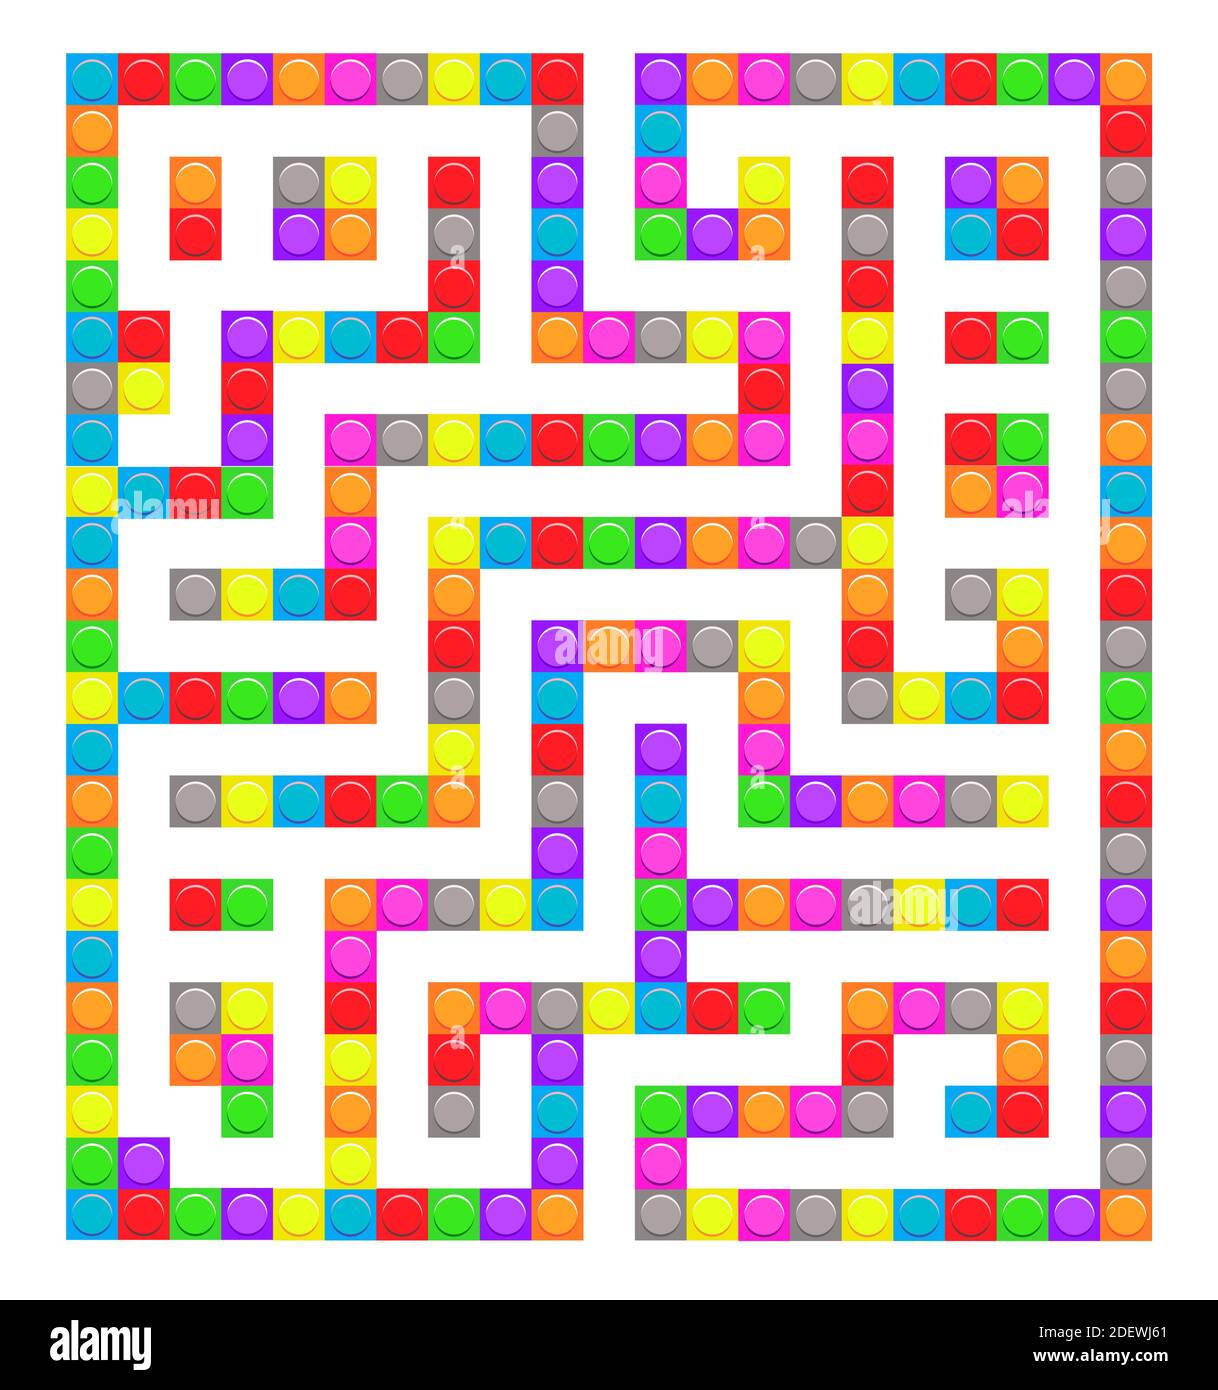 Gioco a labirinto giocattolo di mattoni quadrati per bambini. Logica labirintica. Un ingresso e un modo giusto per andare. Immagine vettoriale piatta luminosa Illustrazione Vettoriale